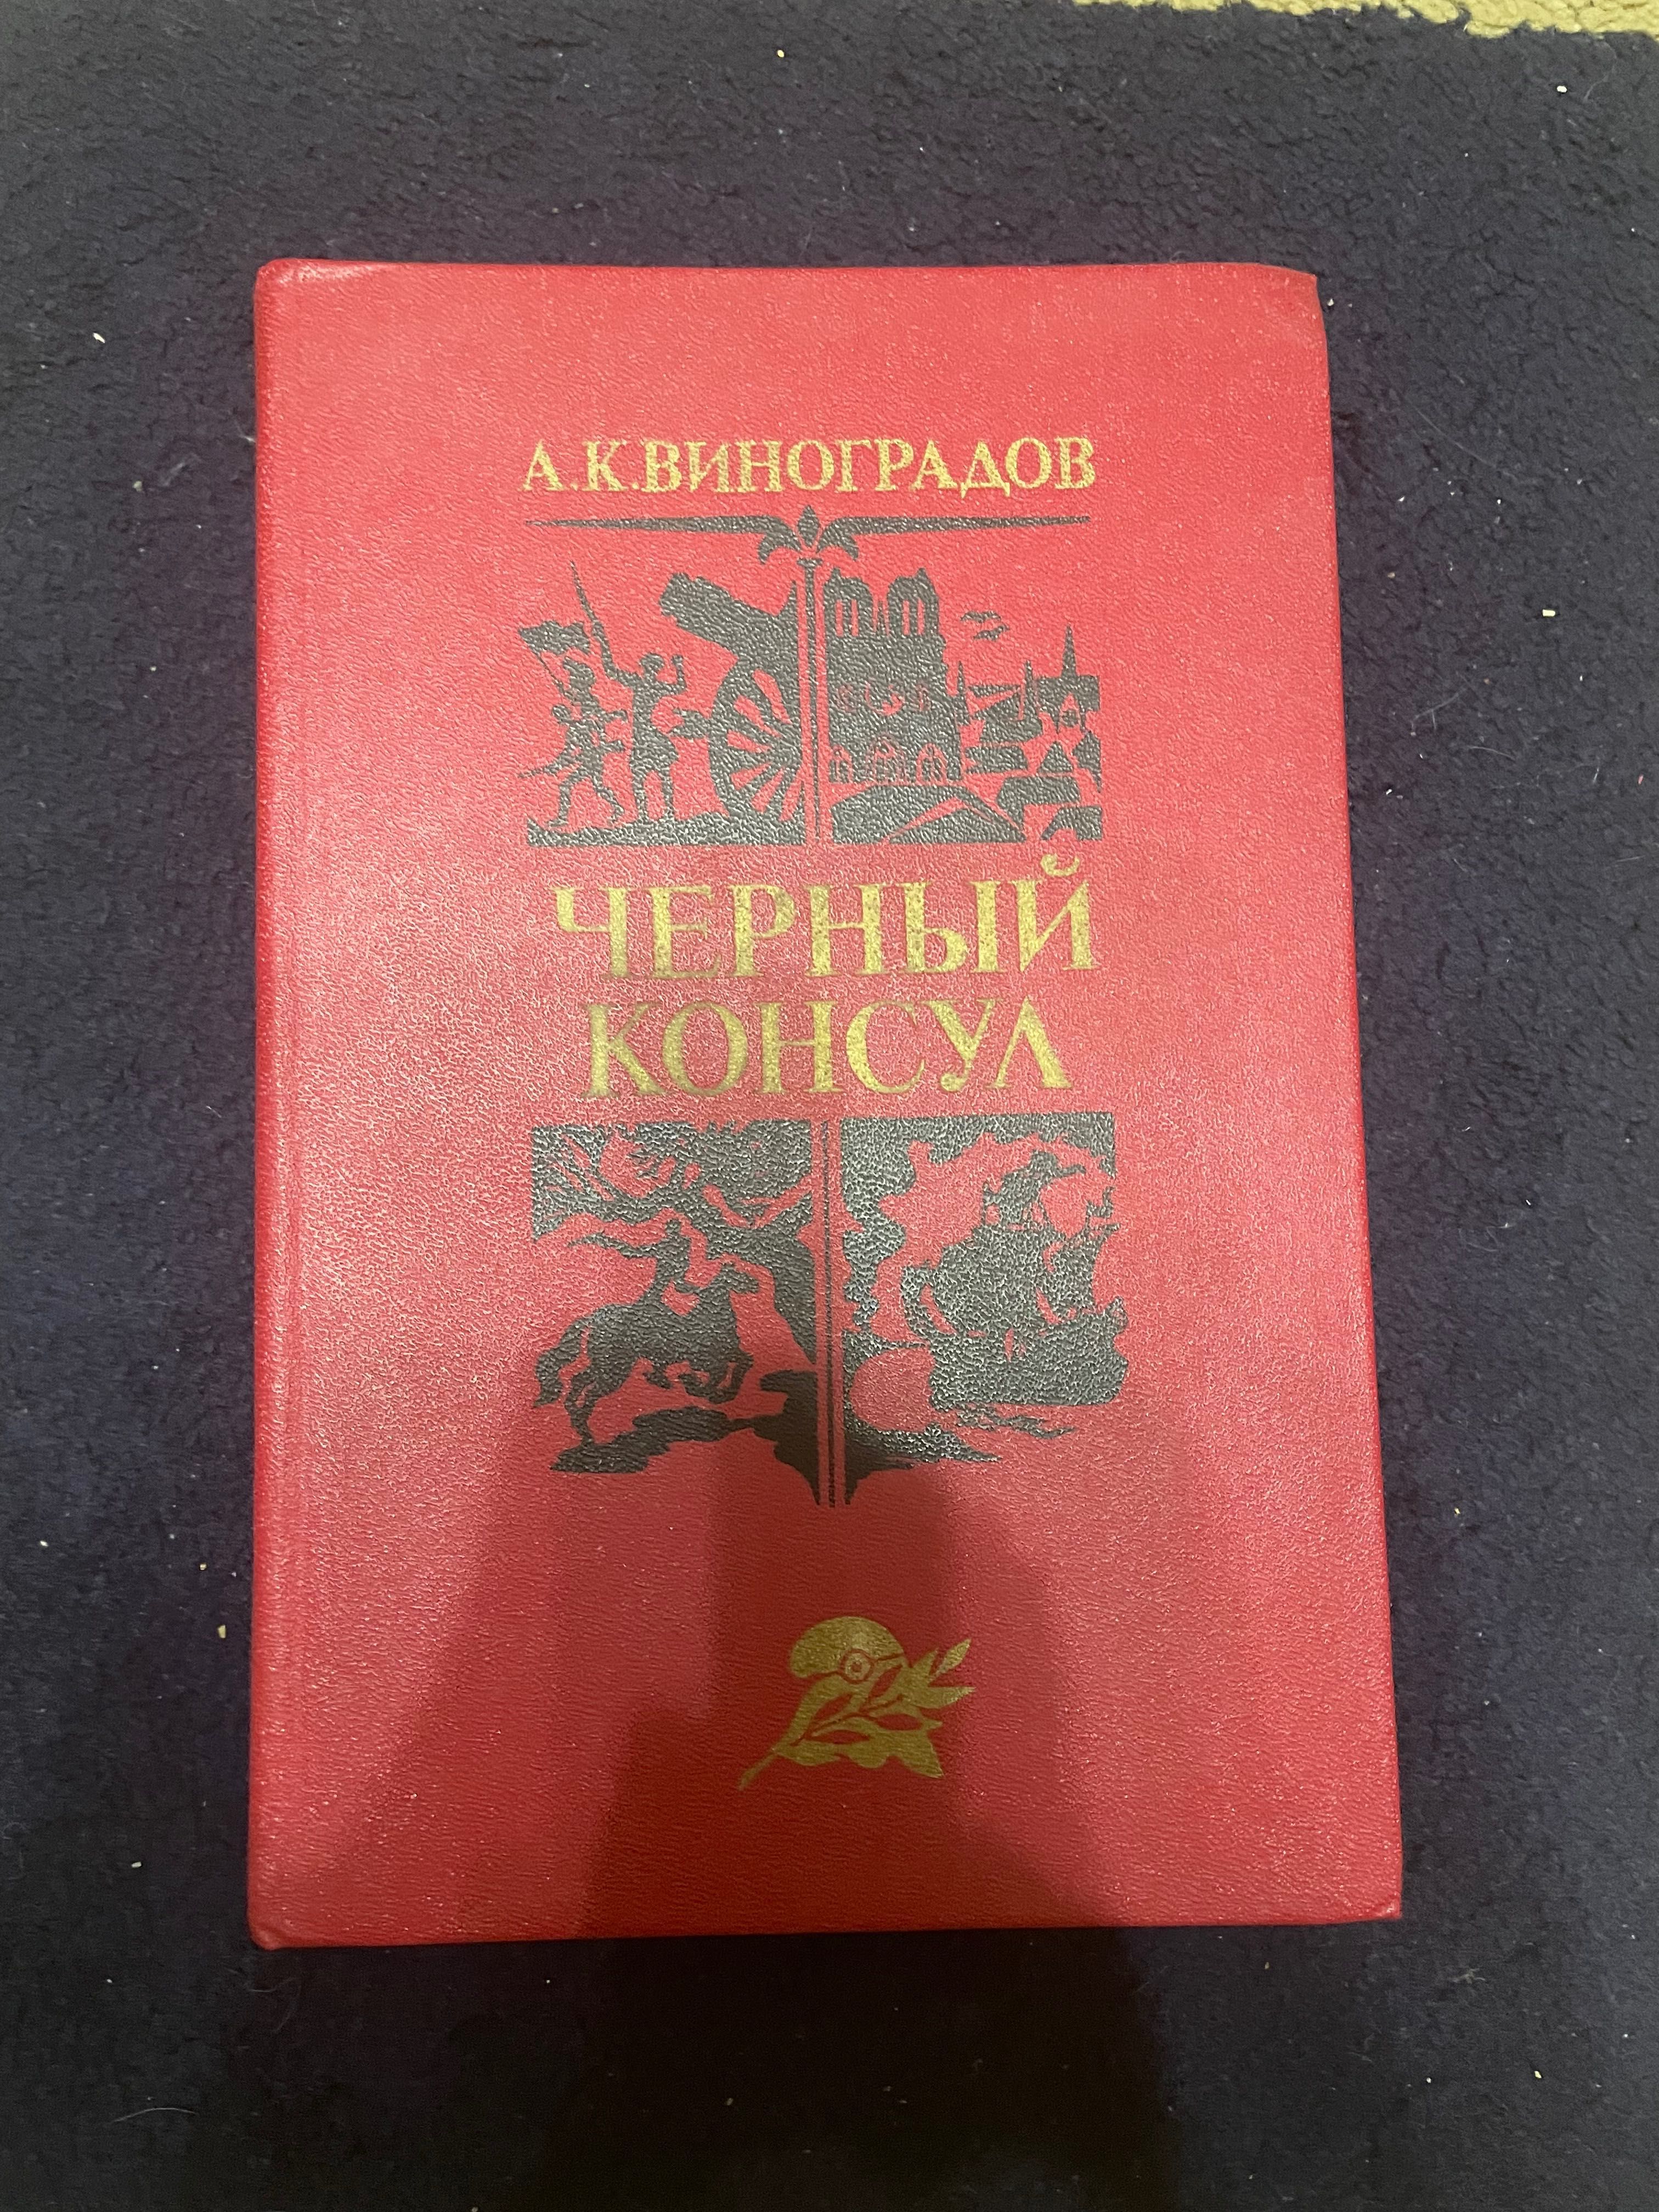 Книги великих русских писателей